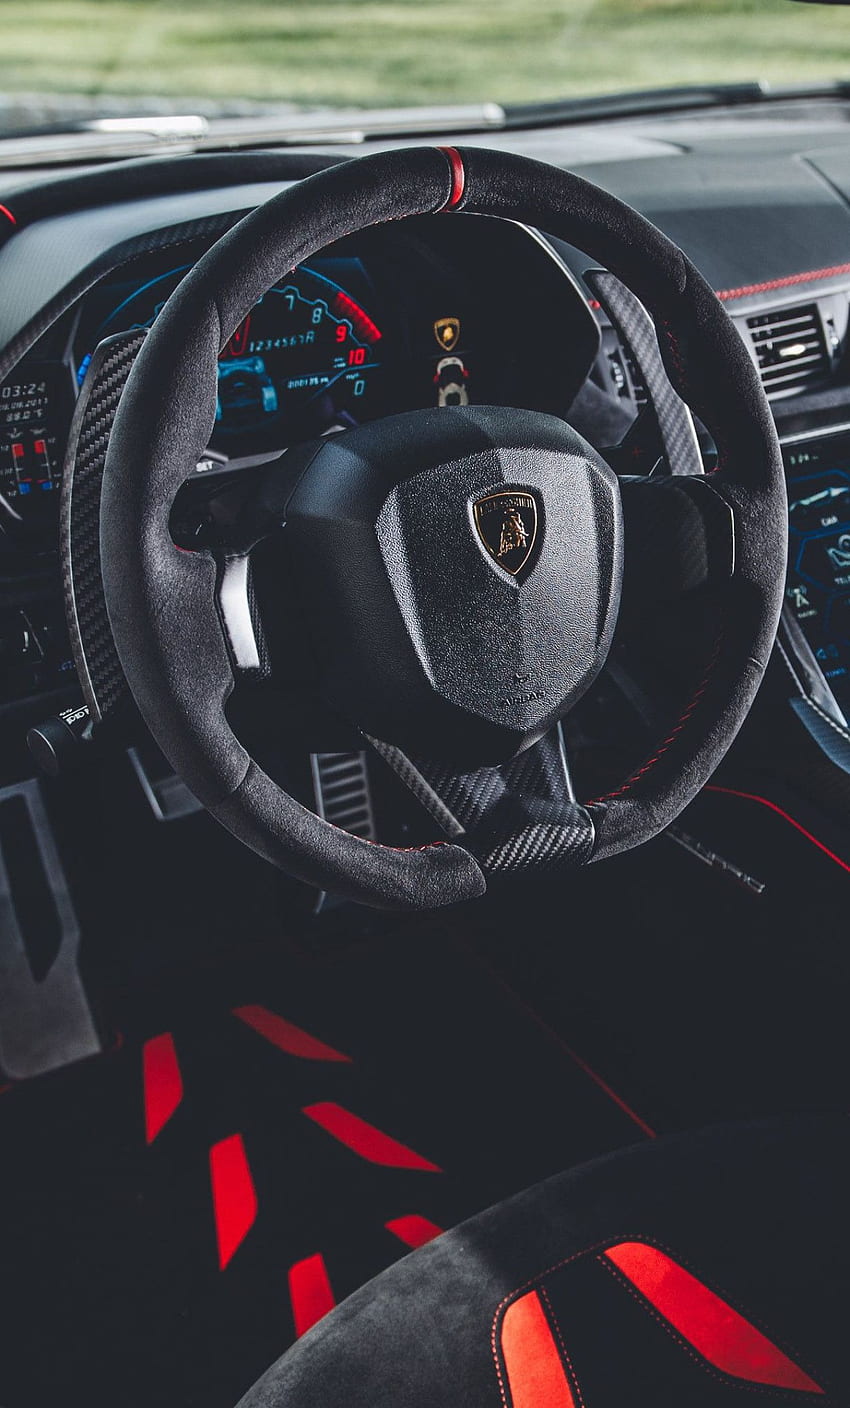 Lamborghini centenario coupe interior HD wallpapers | Pxfuel